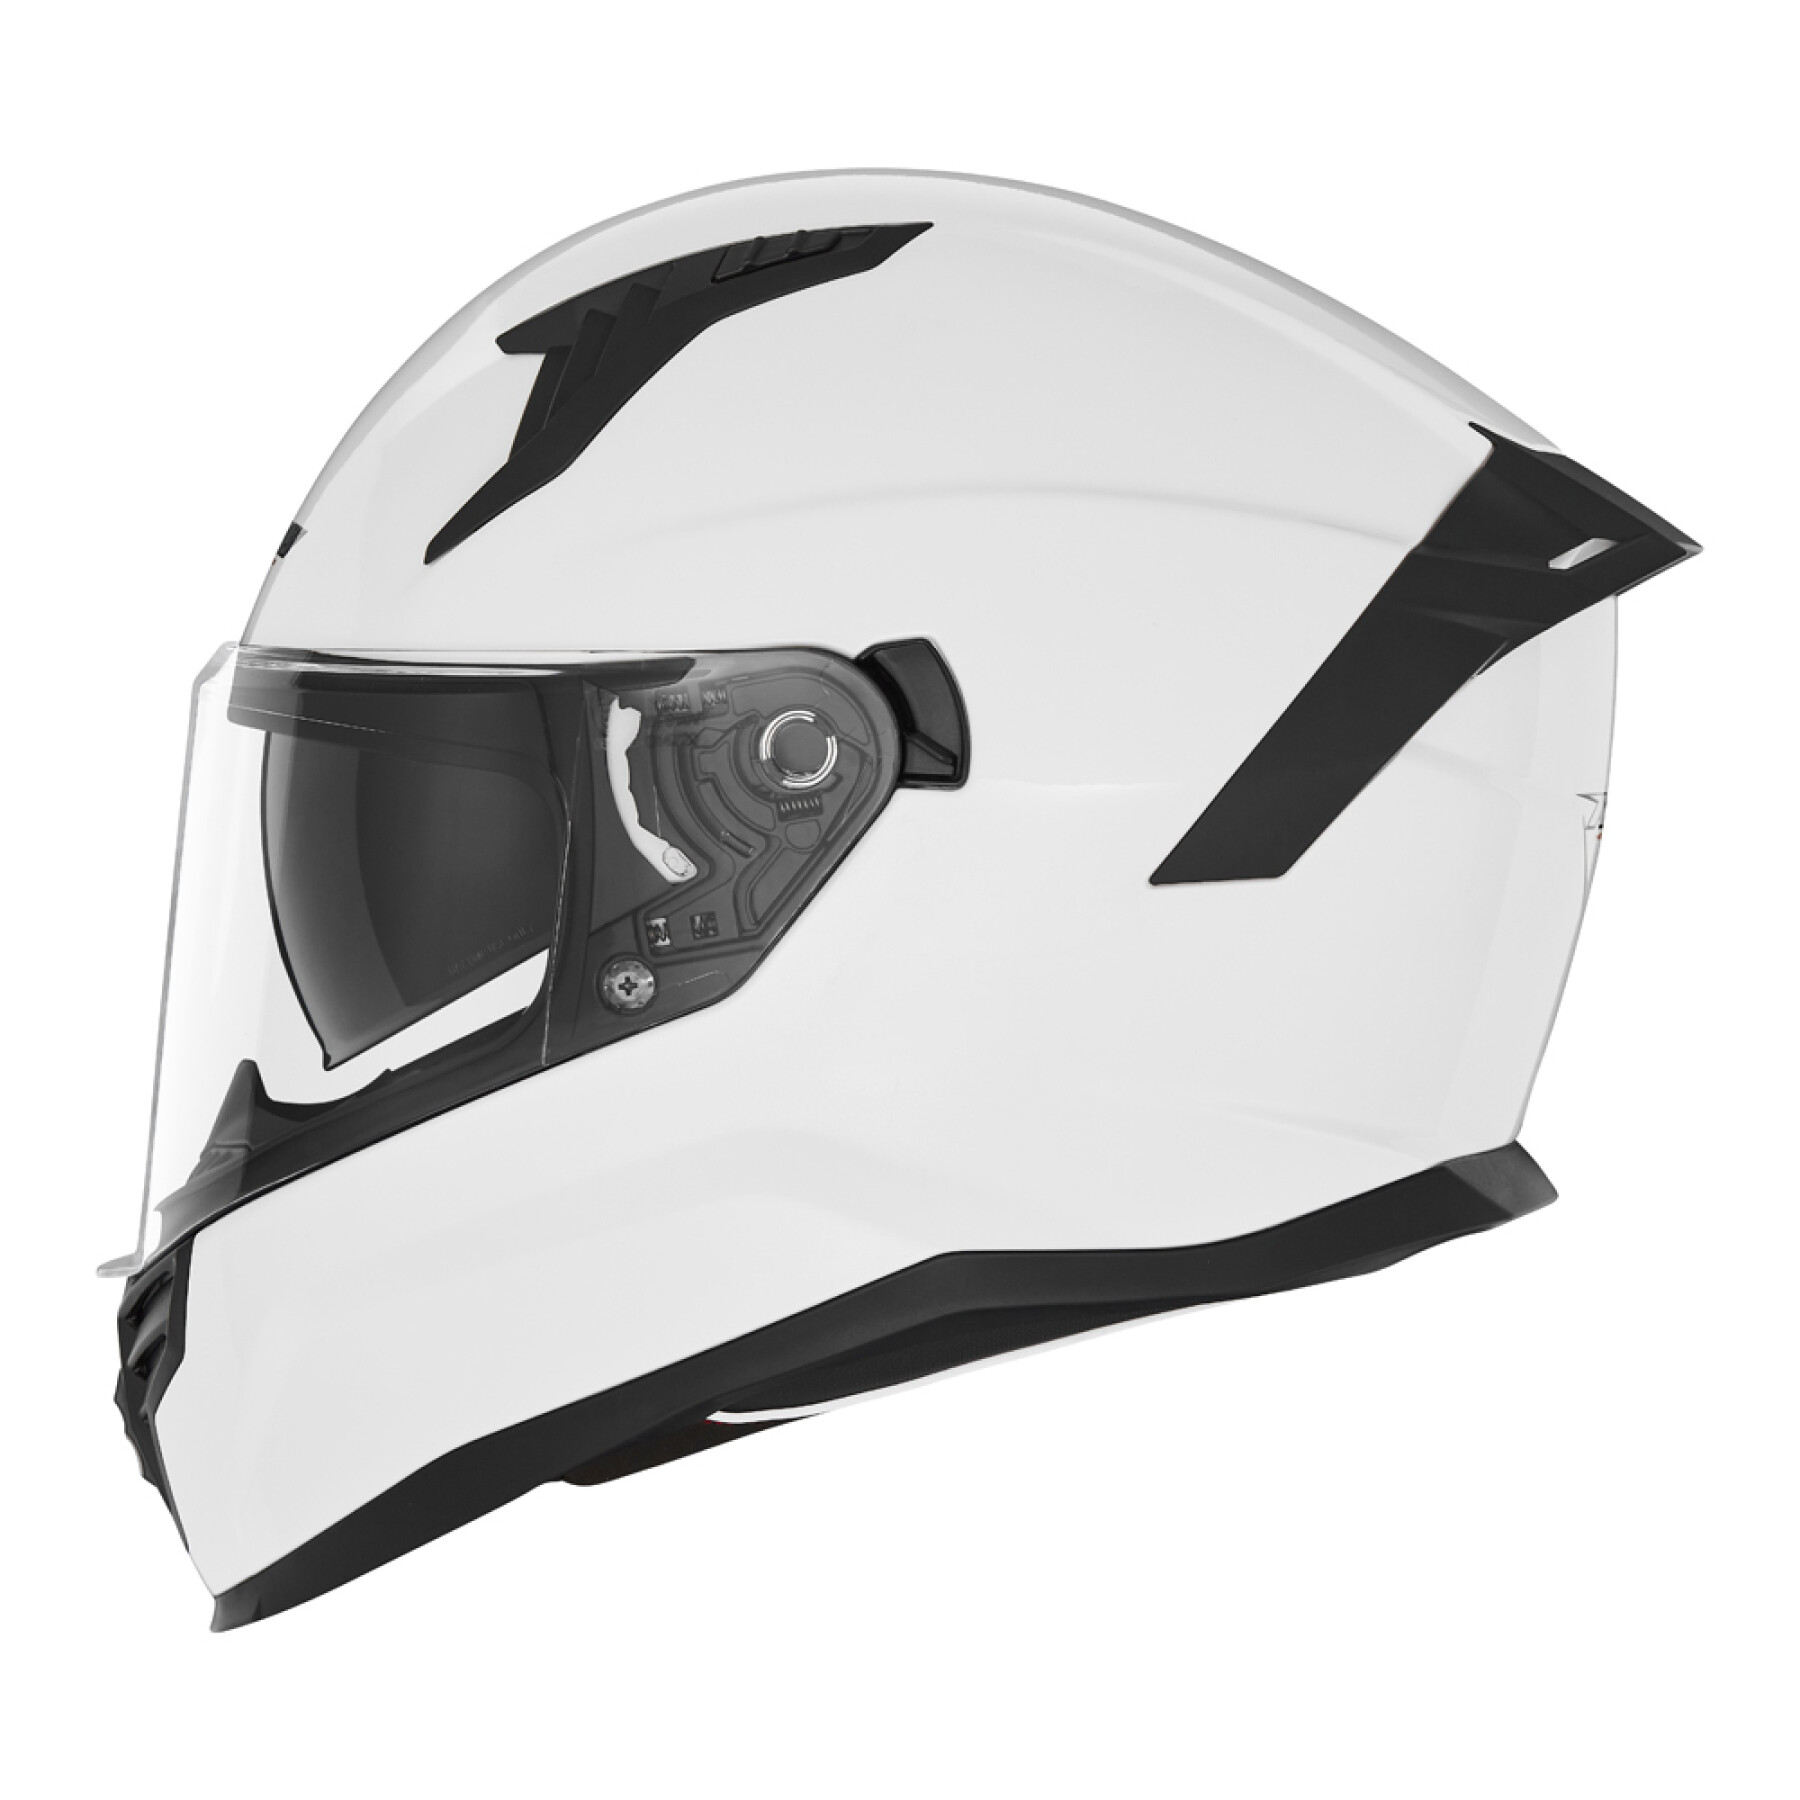 Full face motorcycle helmet Nox N401